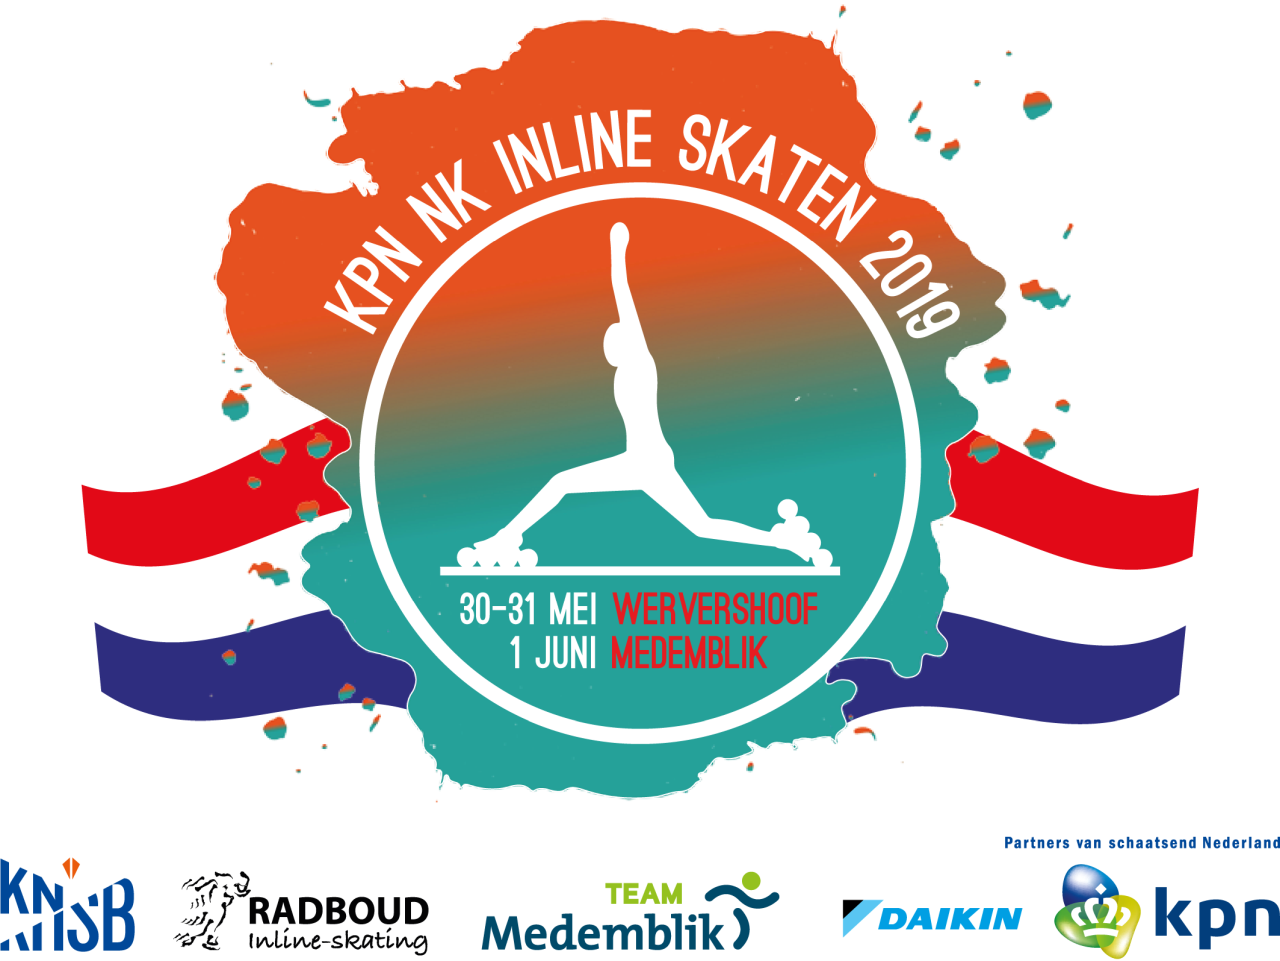 Aftellen richting het NK is begonnen voor Radboud Inline-skating